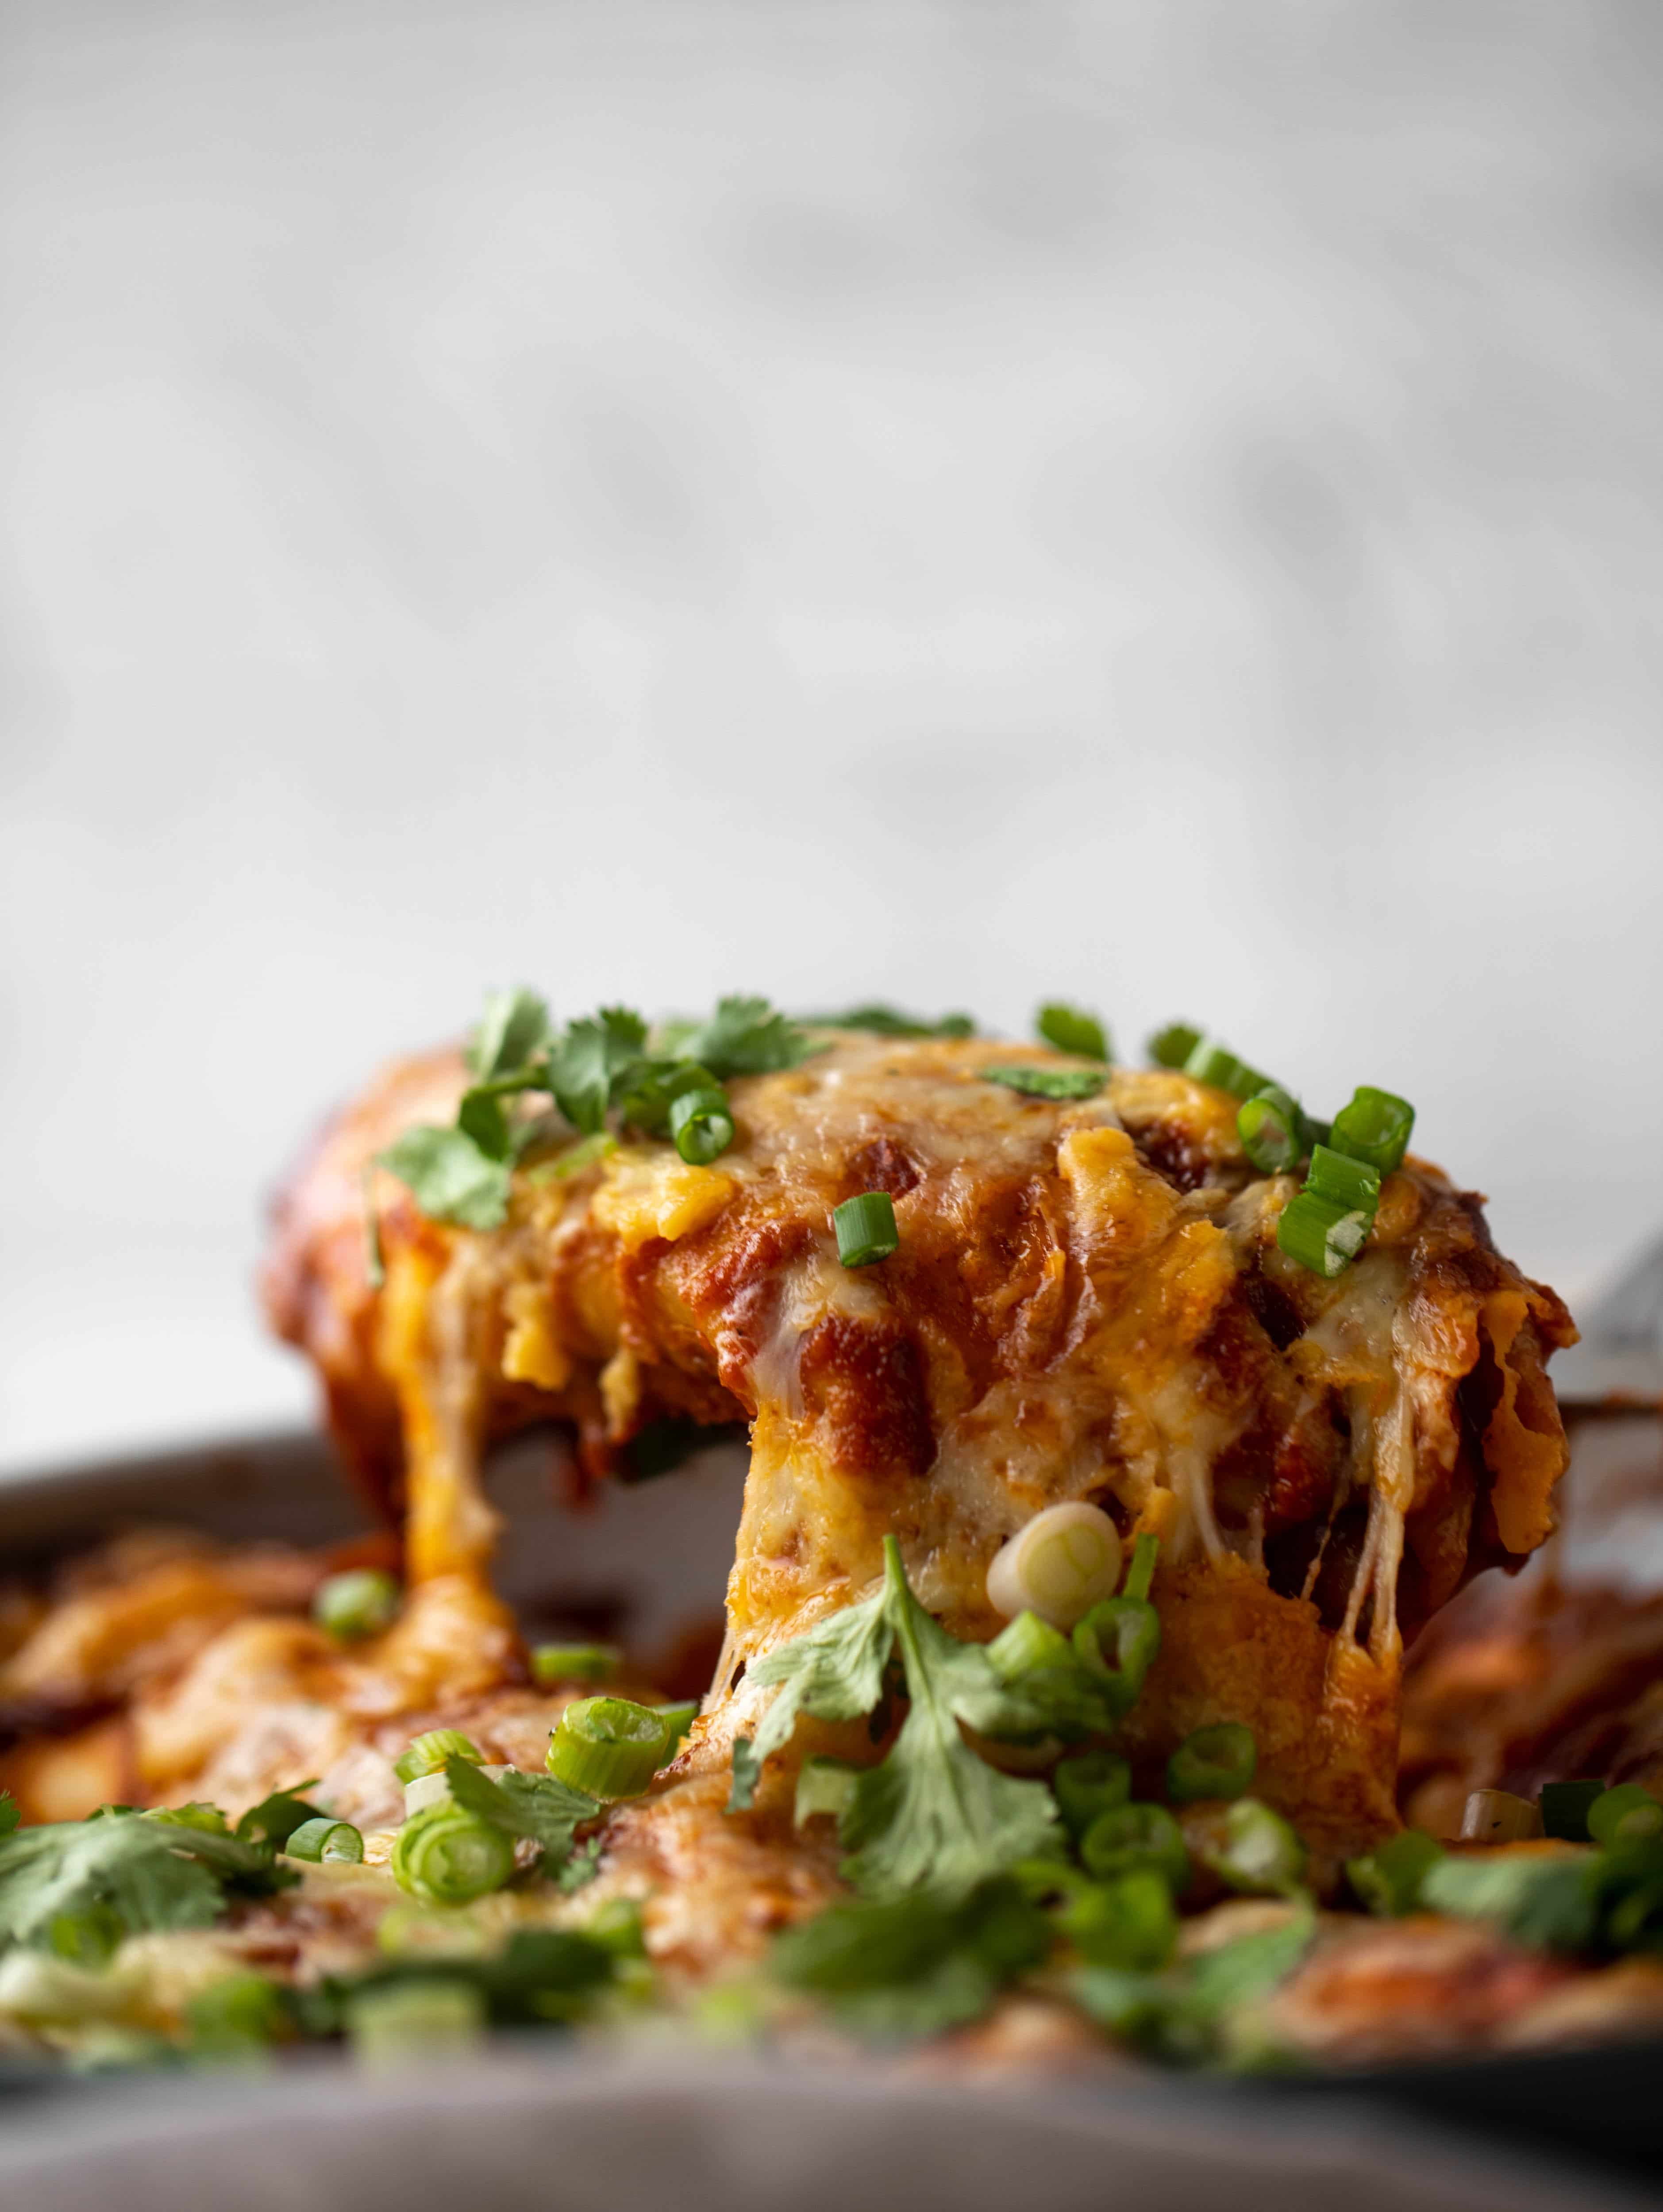 Chipotle Kuřecí pánev enchiladas jsou nabité chutí a tak rychle se spojují! Jsou to perfektní pikantní týdenní jídlo.